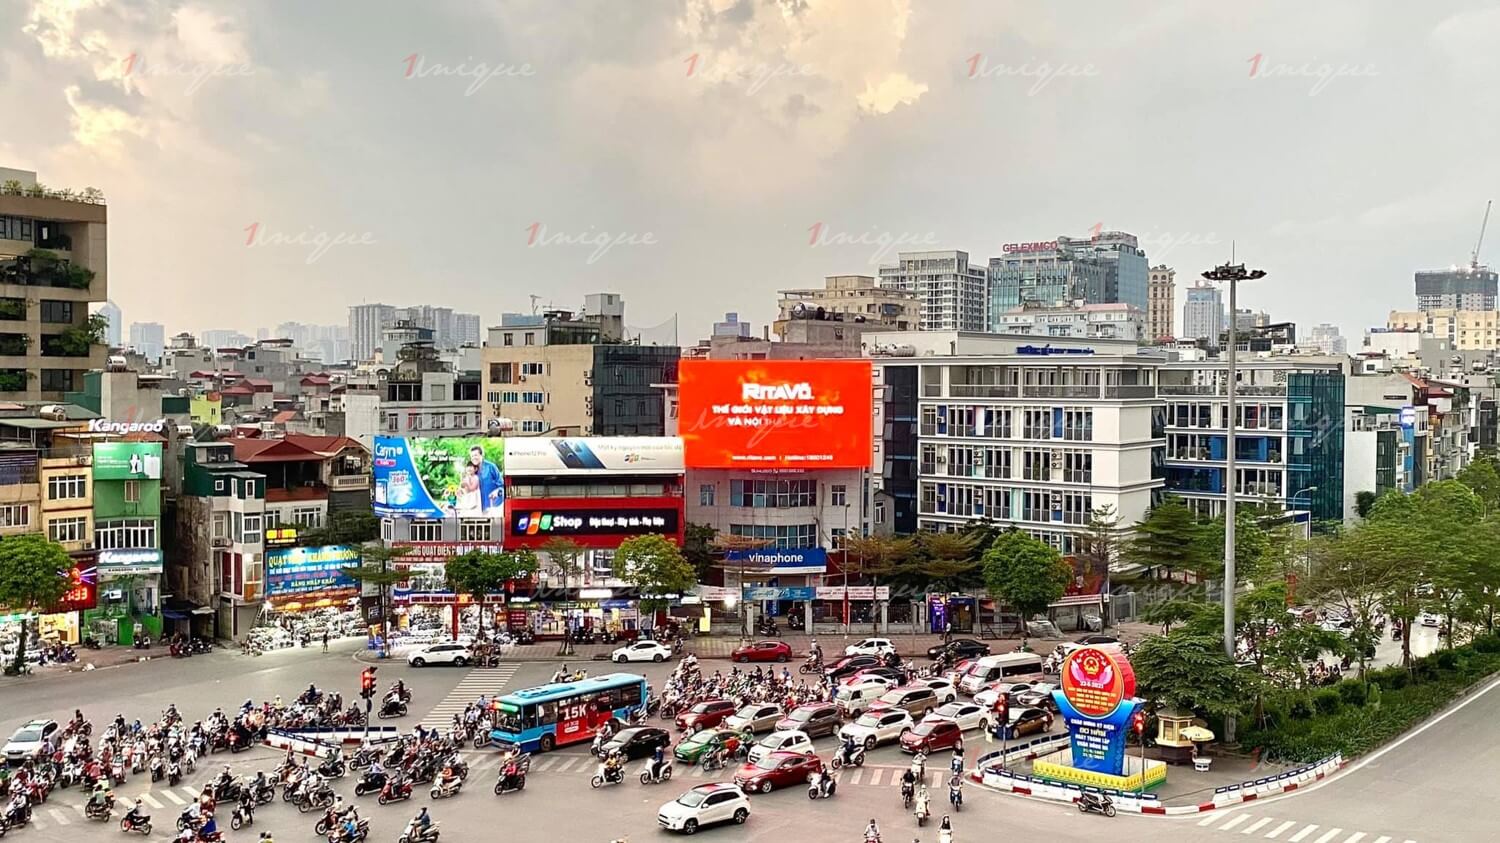 Màn Led quảng cáo ngoài trời tại 22 Đông Các Ngã 7 Ô Chợ Dừa